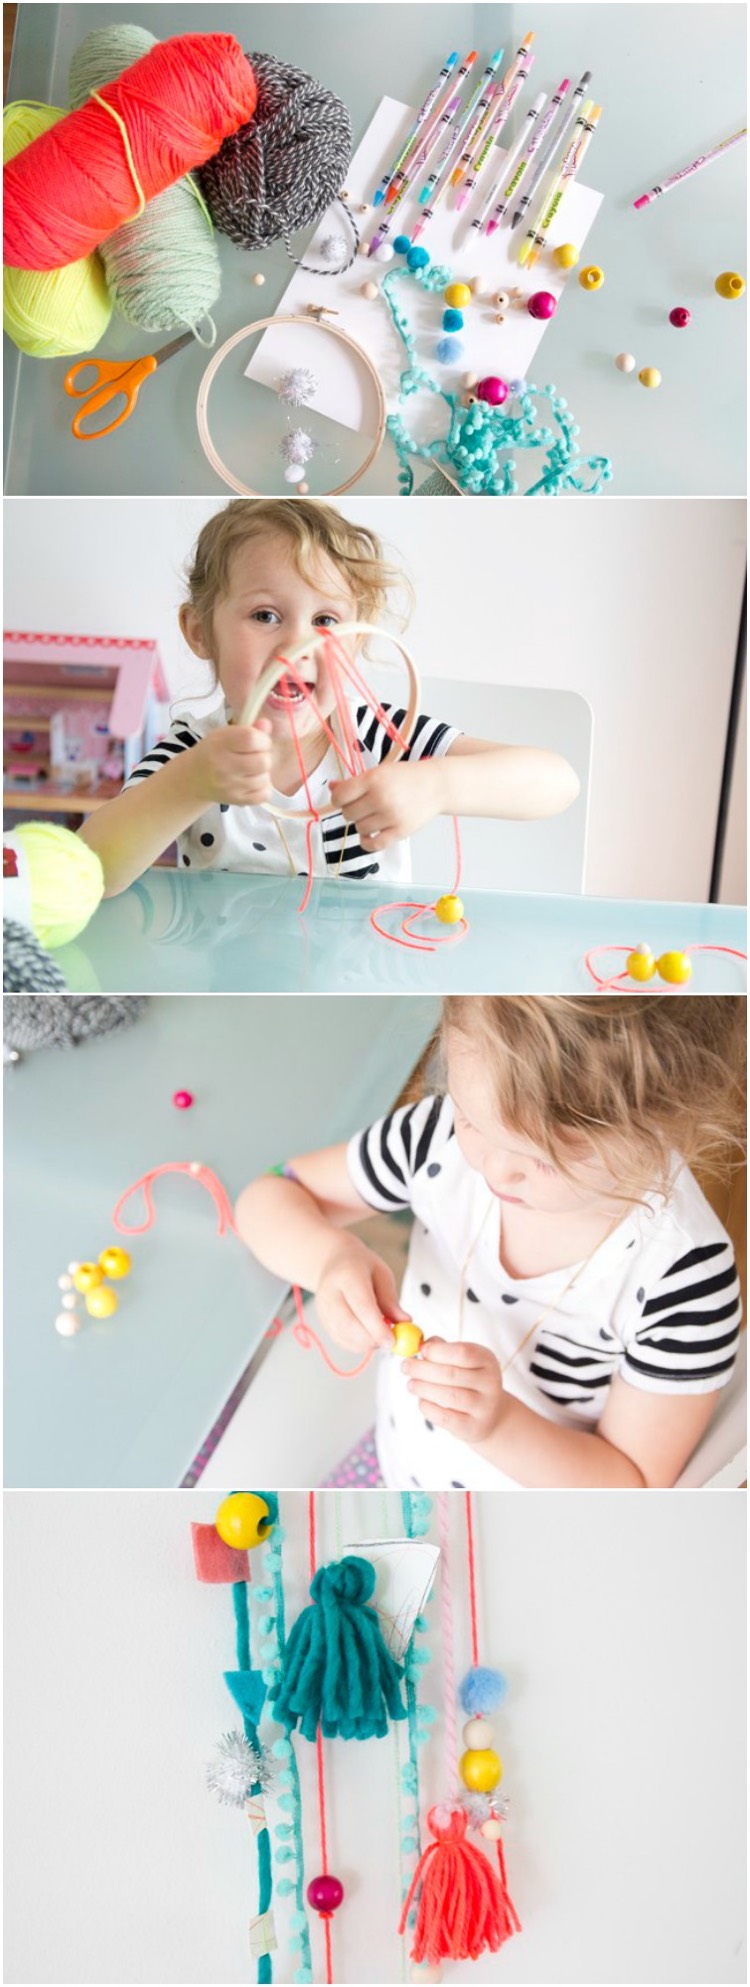 fabriquer-un-attrape-reve-bricolage-enfants-decoration-pompons-perles-bois